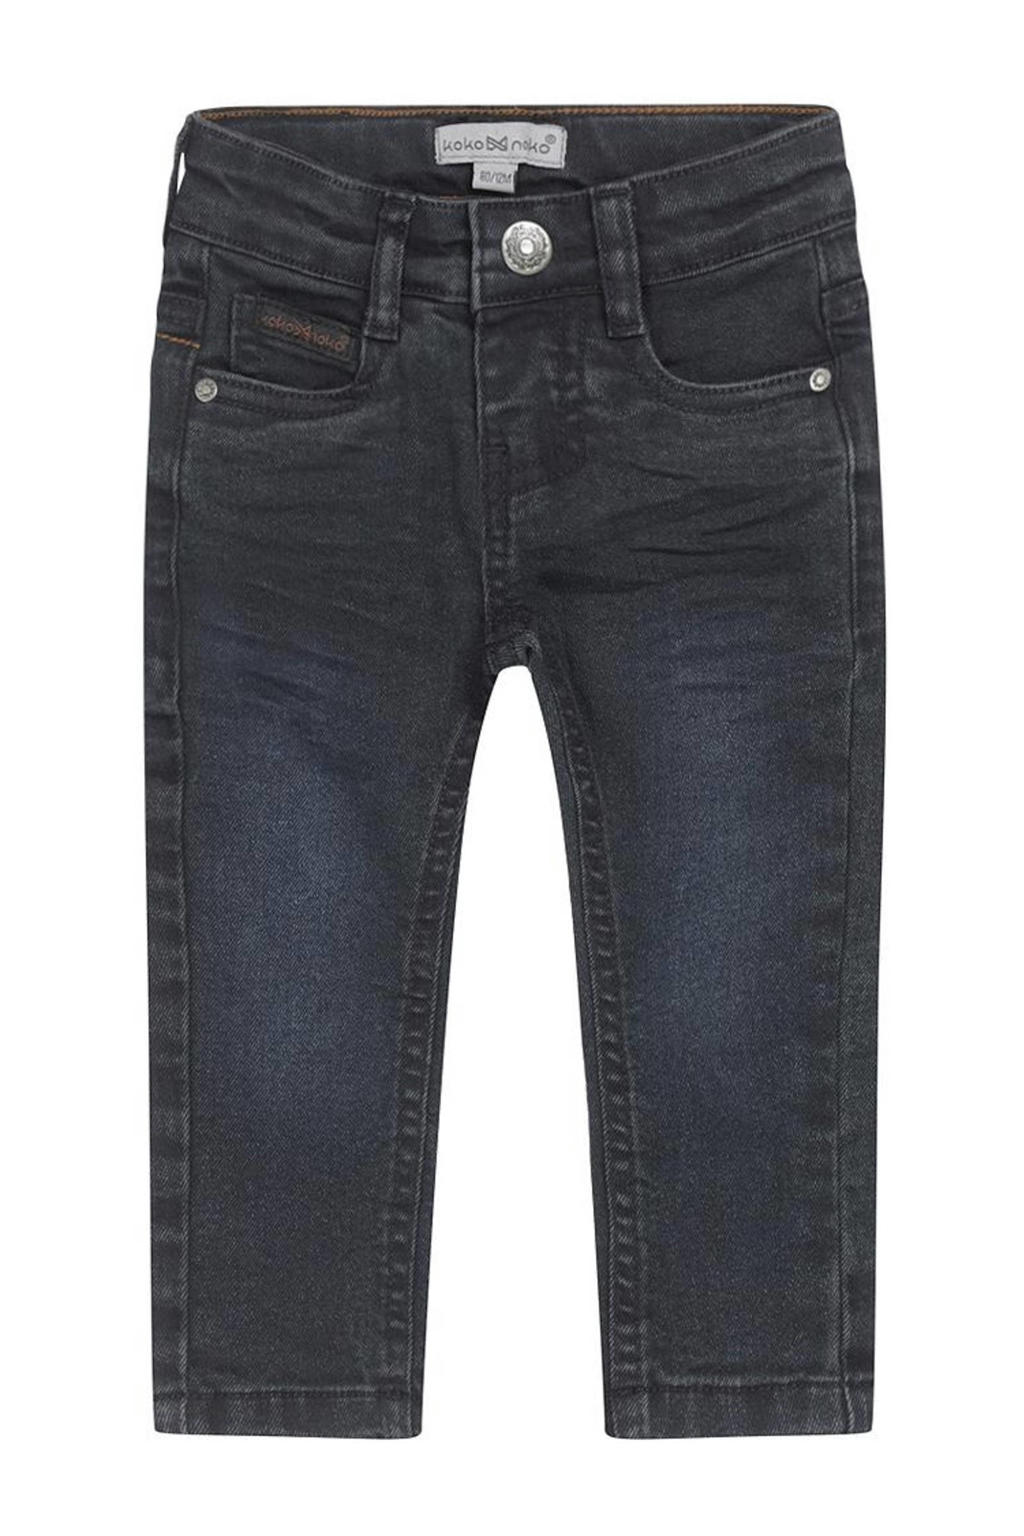 Donkerblauwe jongens Koko Noko skinny jeans van stretchdenim met regular waist